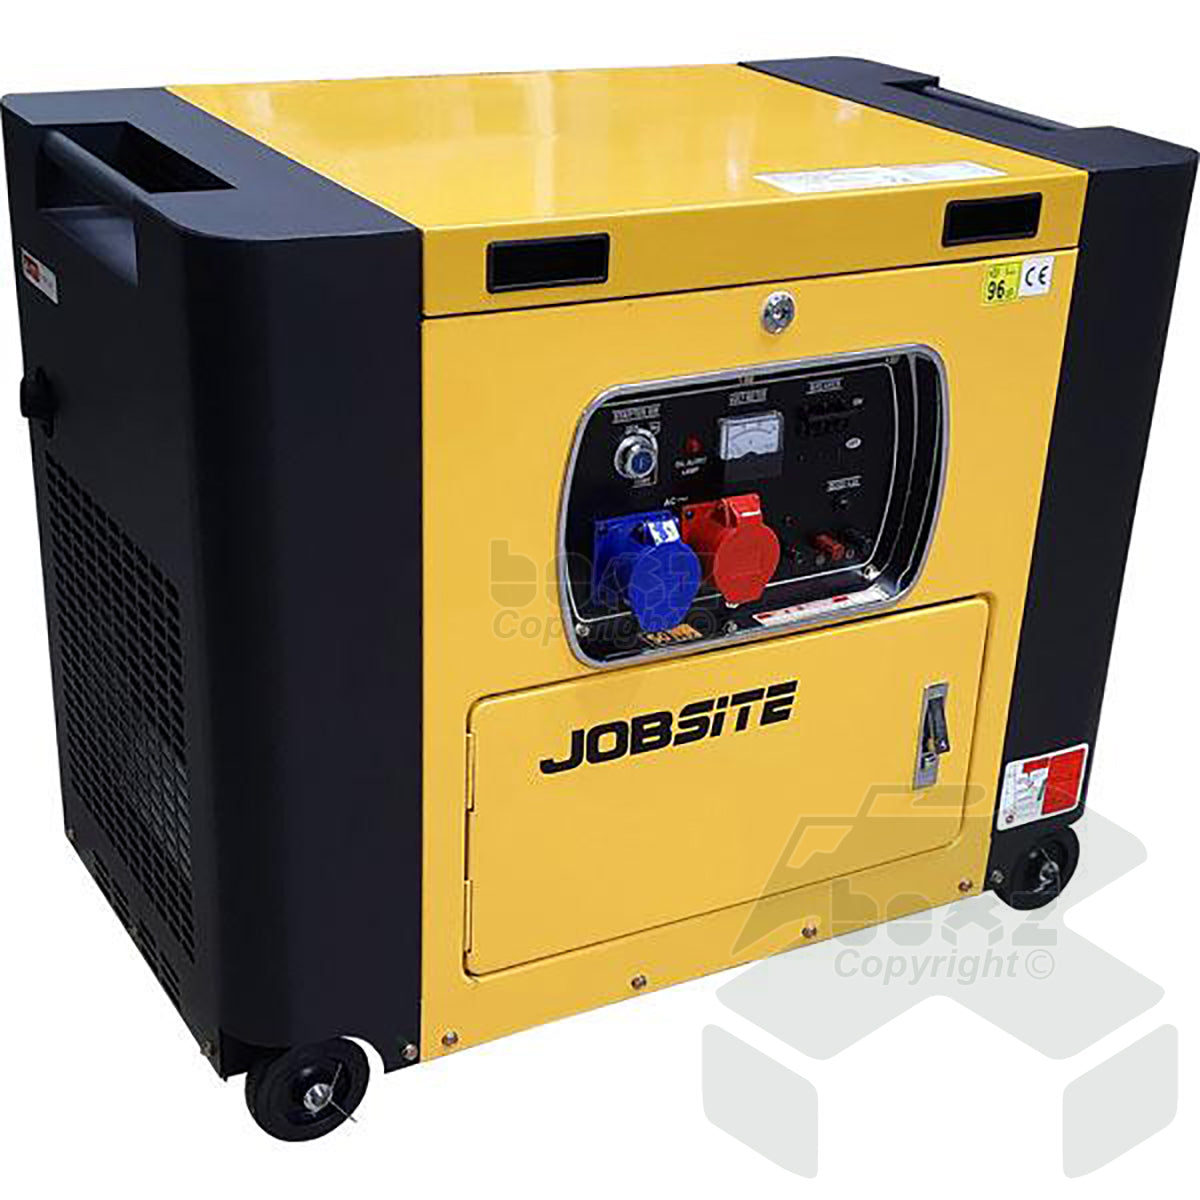 Jobsite 3 Phase Diesel Generator 240v/400v